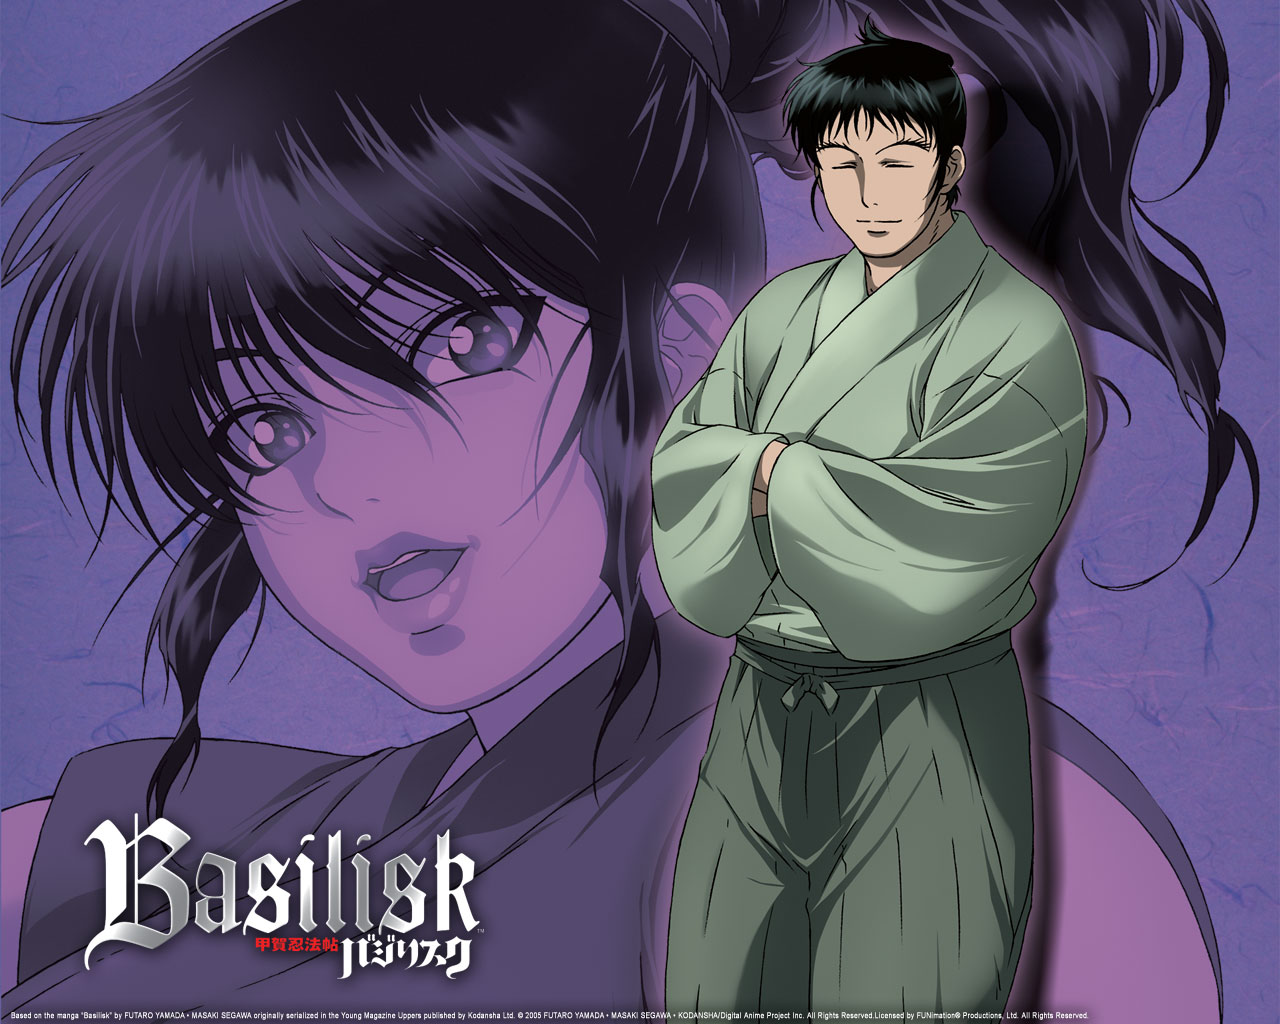 Gennosuke and Oboro | Basilisk anime, Basilisk, Anime kimono